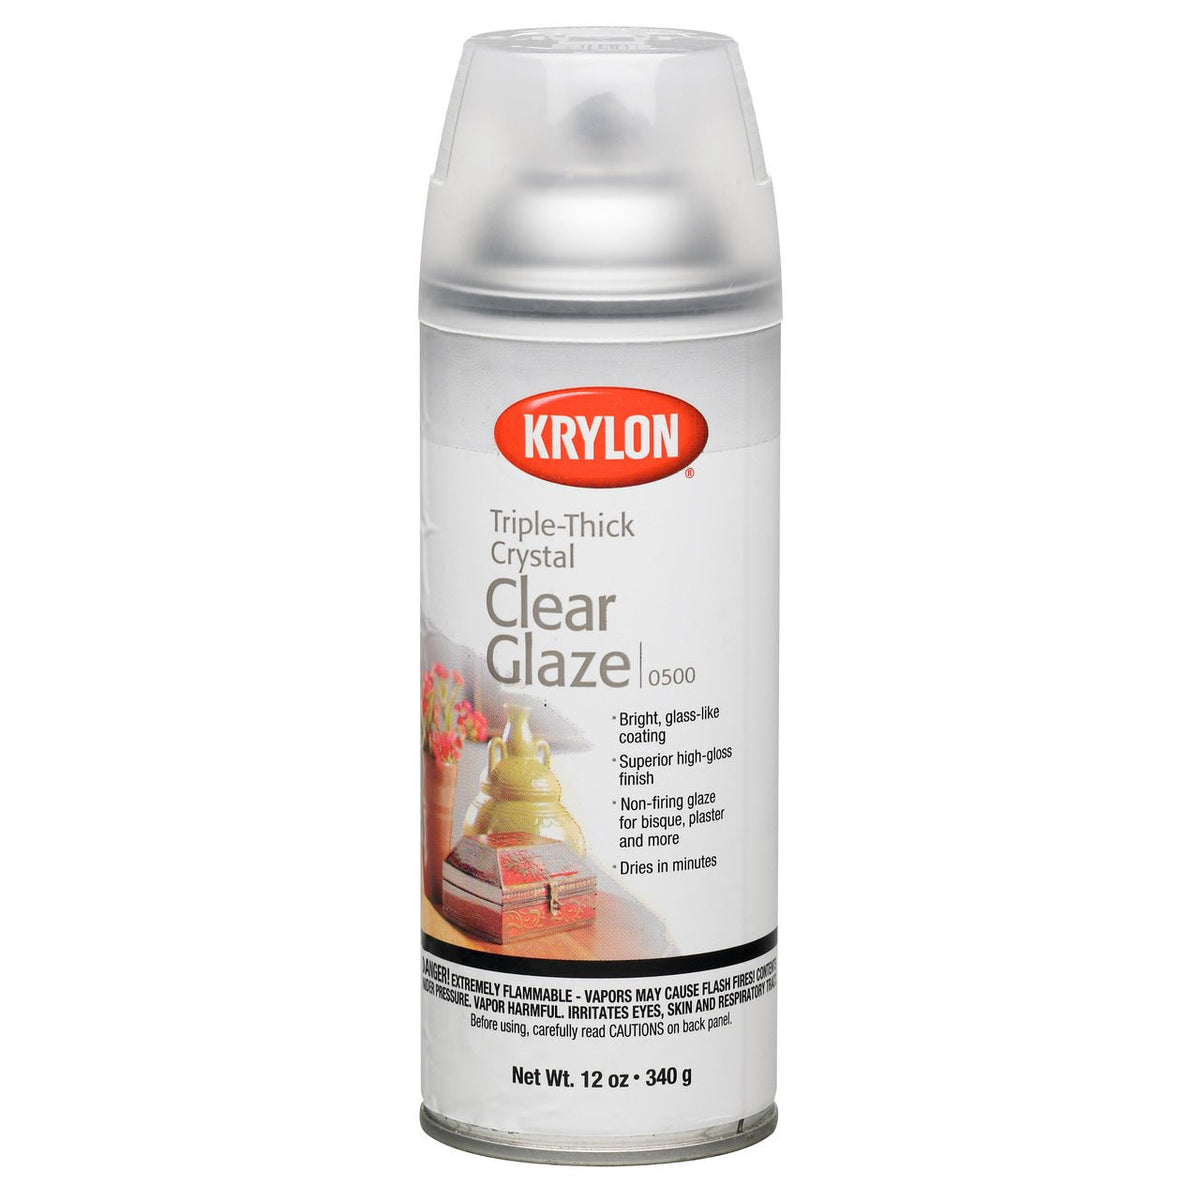 DecoArt Americana Acrylic Sealer Spray, Gloss 